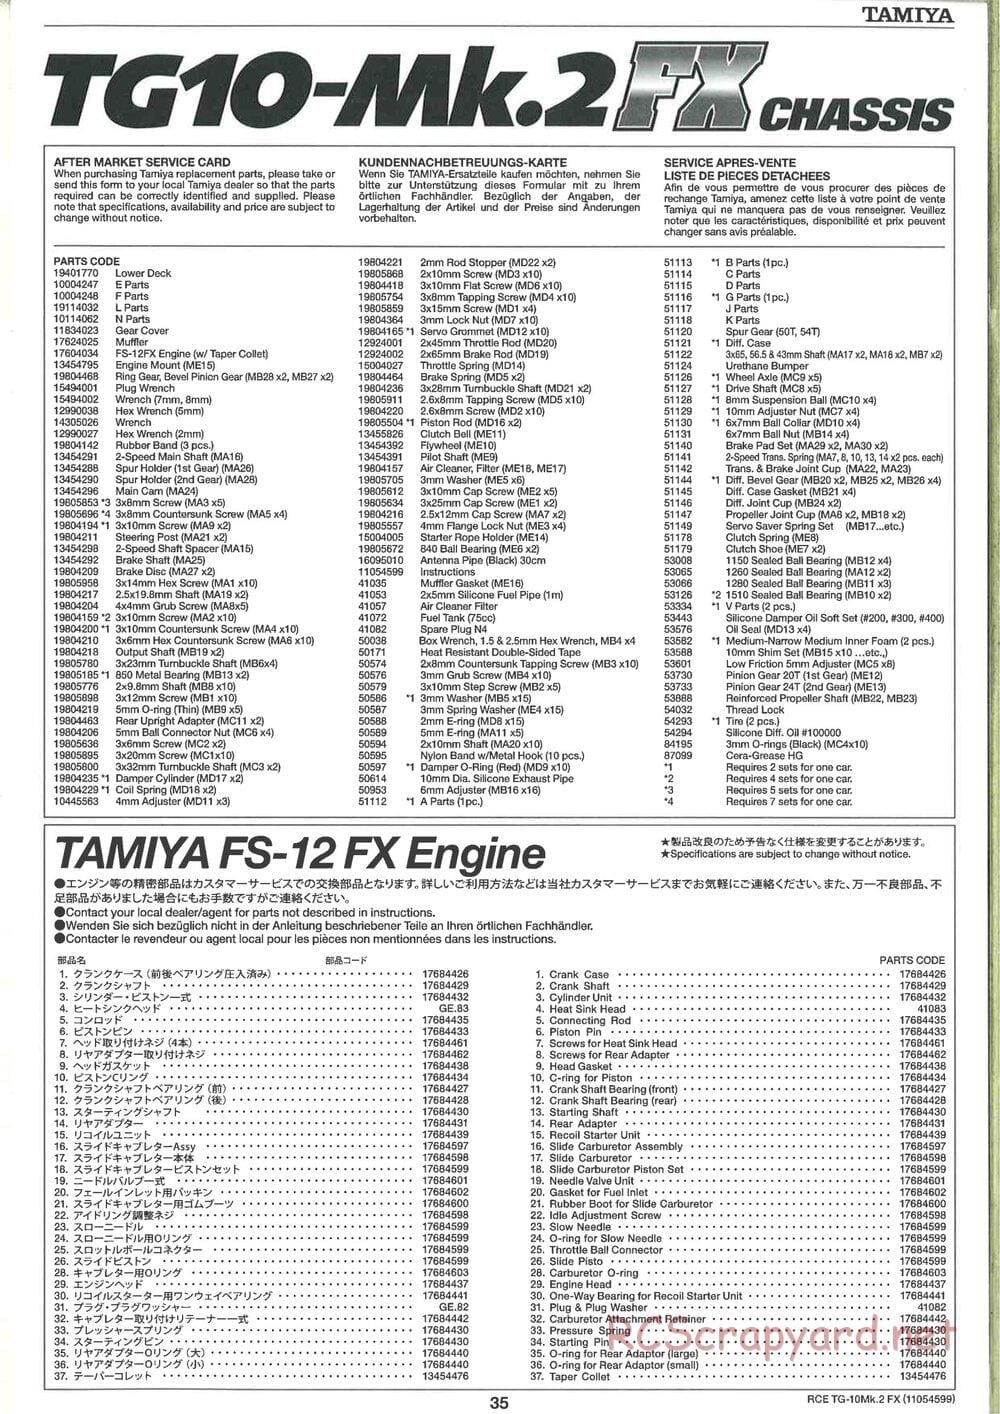 Tamiya - TG10 Mk.2 FX Chassis - Manual - Page 35